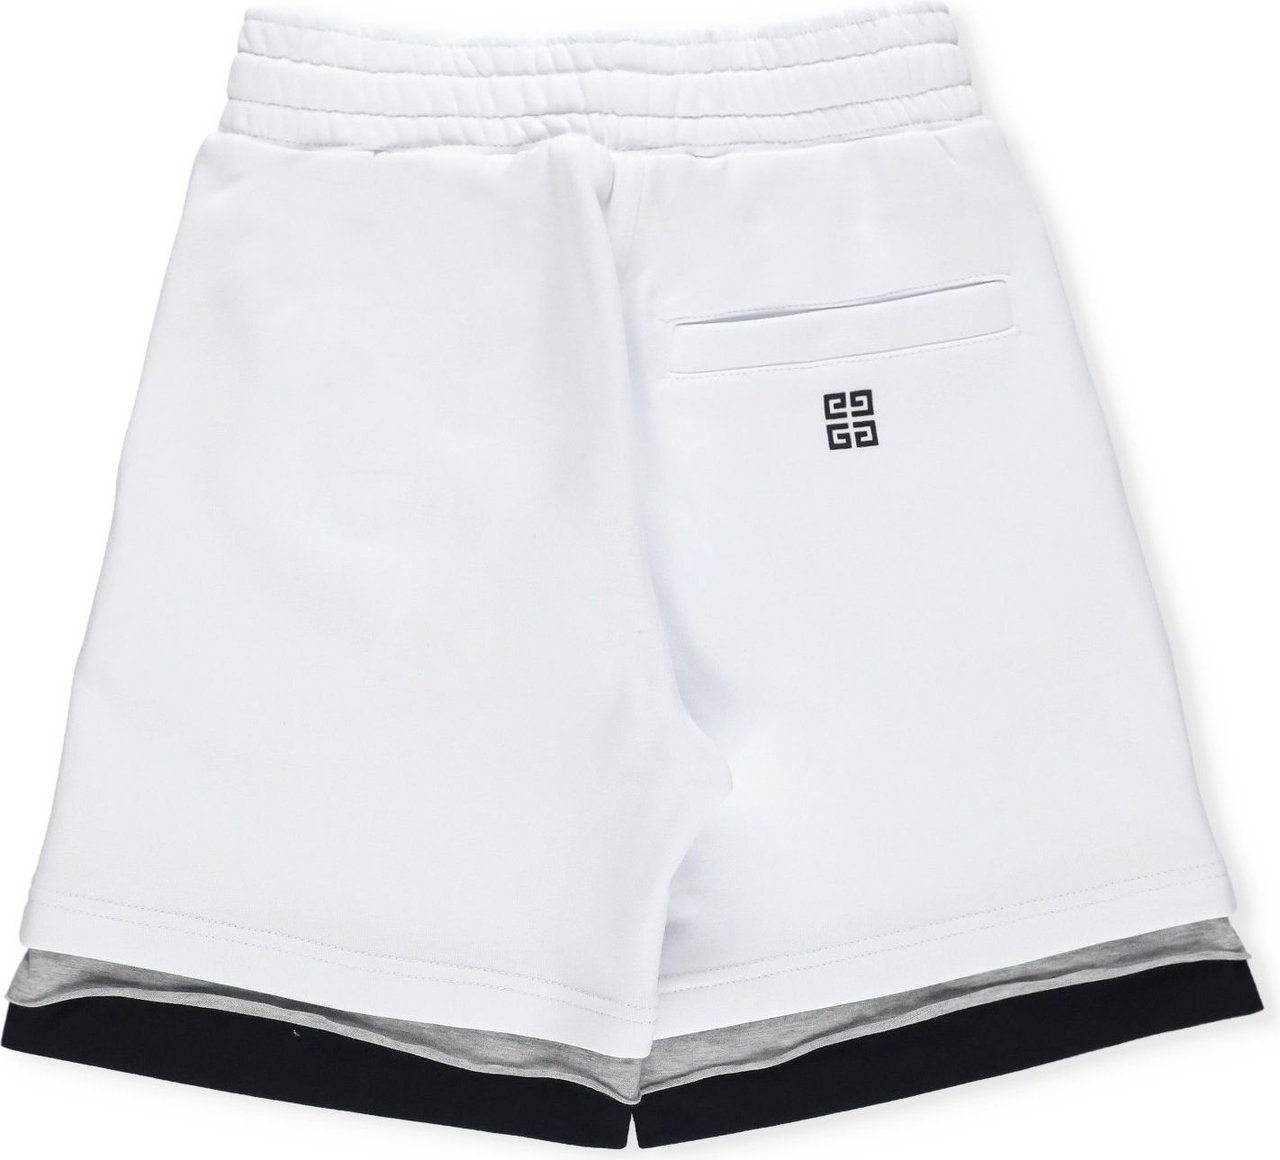 Givenchy Shorts White Neutraal